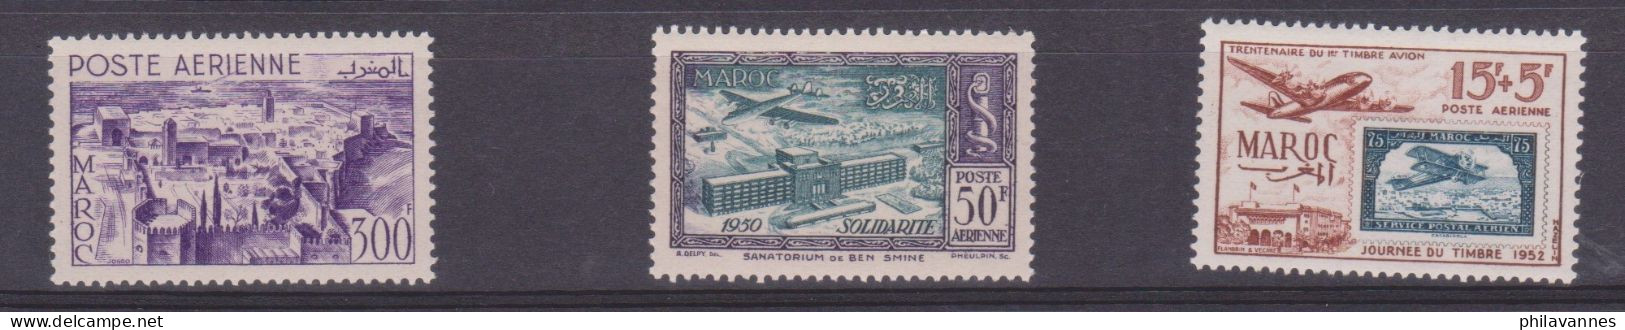 MAROC, Poste Aérienne N° 82 à 84  , Neufs **,cote 36.5€ ( Maroc/007) - Poste Aérienne